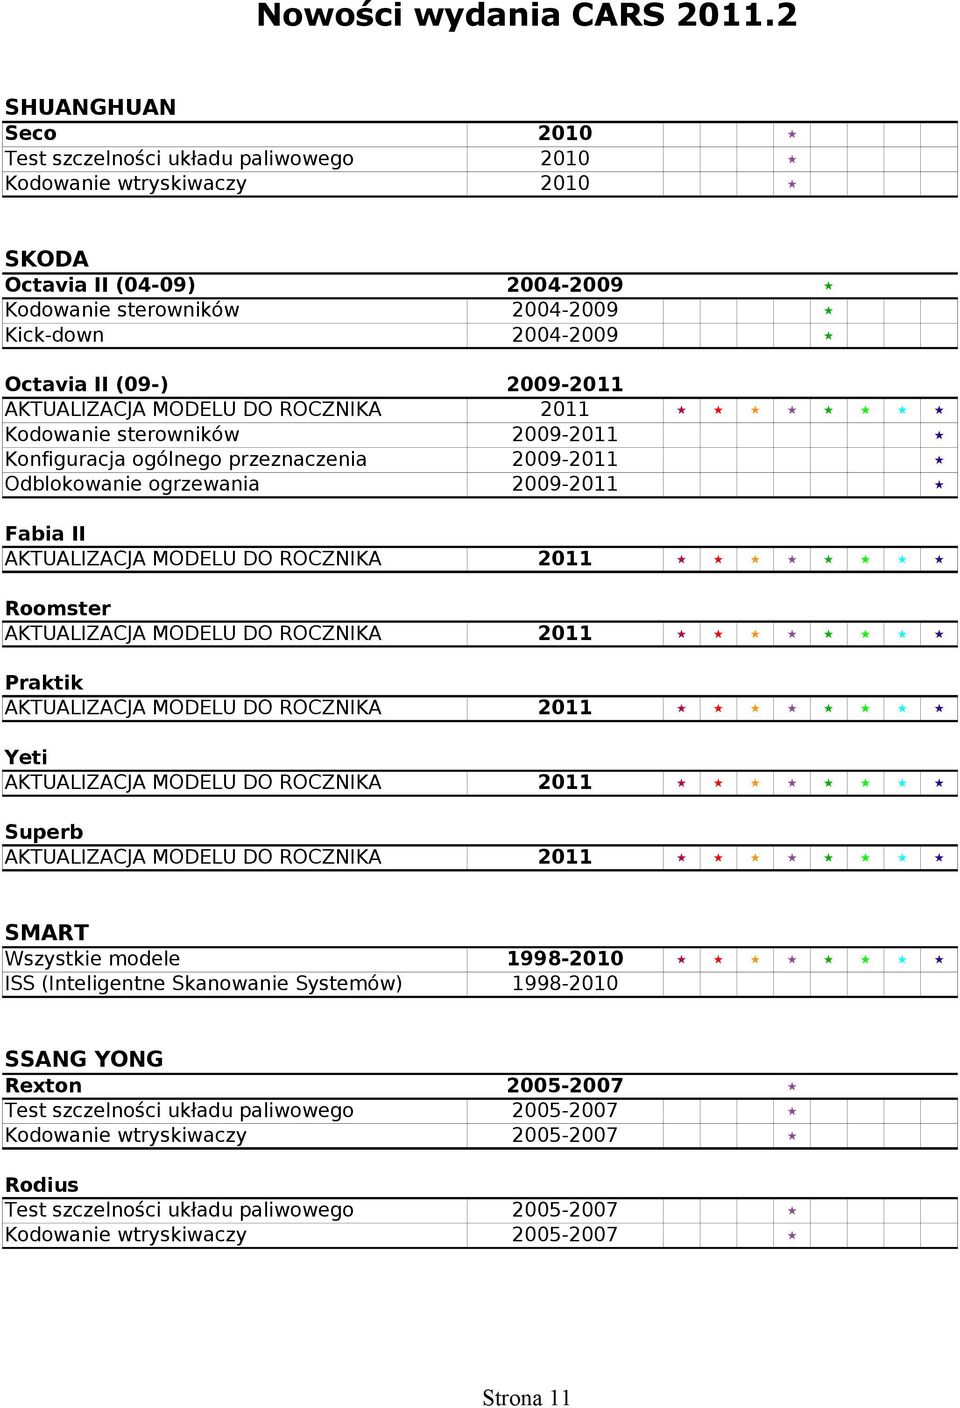 Fabia II Roomster Praktik Yeti Superb SMART Wszystkie modele 1998-2010 ISS (Inteligentne Skanowanie Systemów) 1998-2010 SSANG YONG Rexton 2005-2007 Test